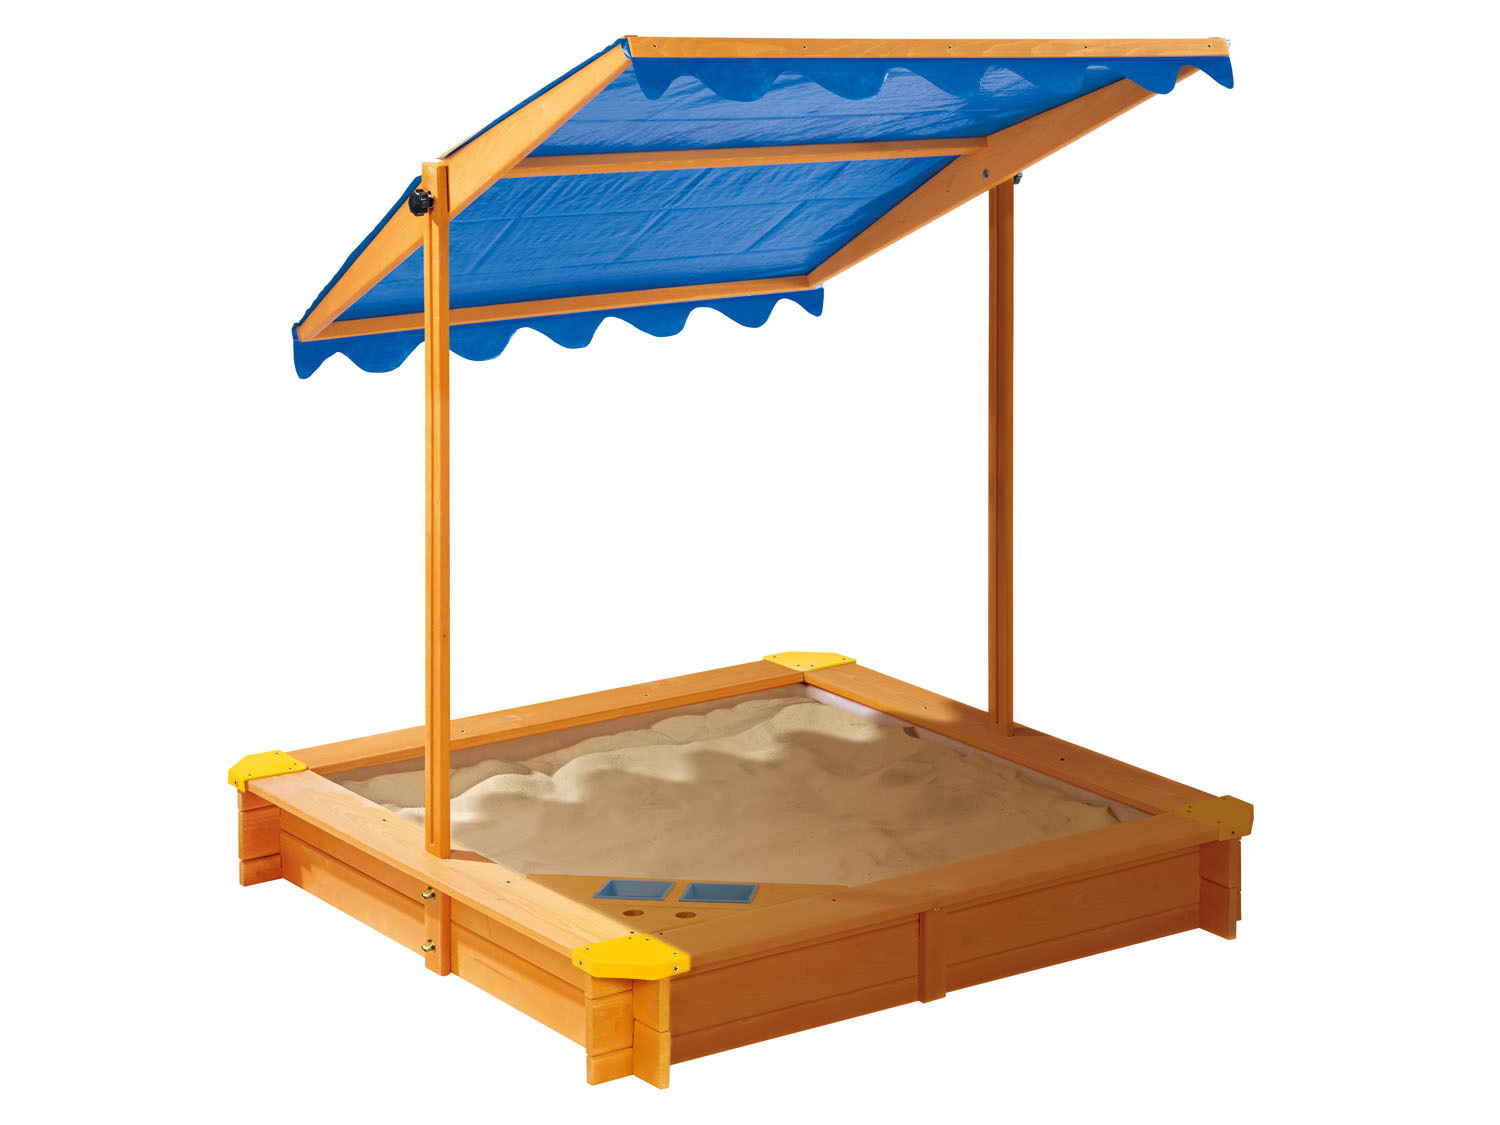 Playtive Zandbak met dak online kopen op